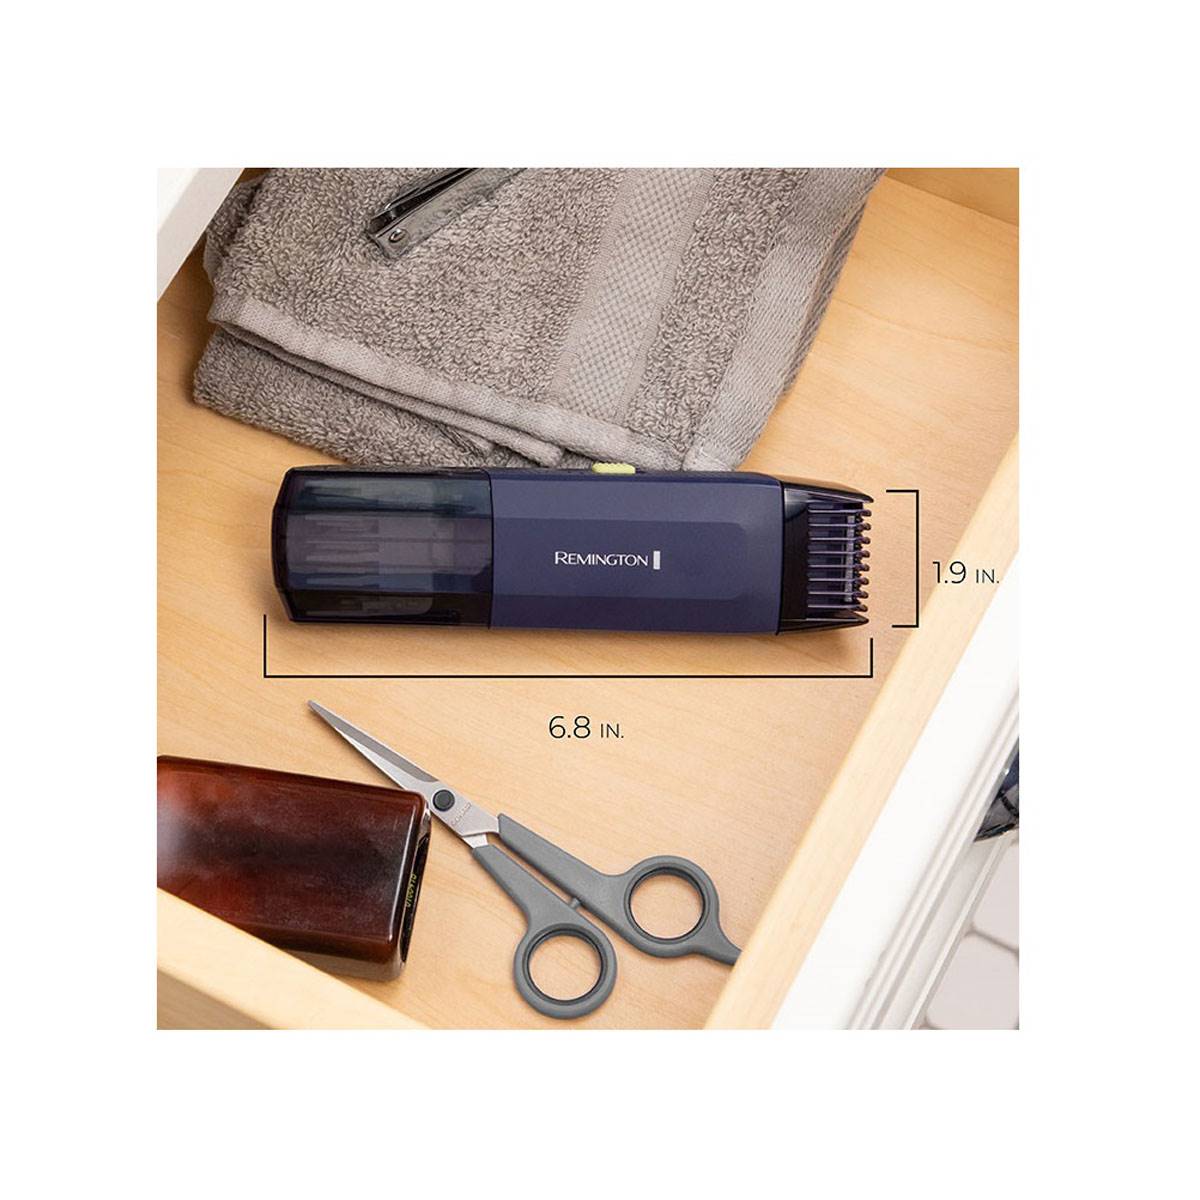 Remington Trim & Fit Personal Grooming Kit